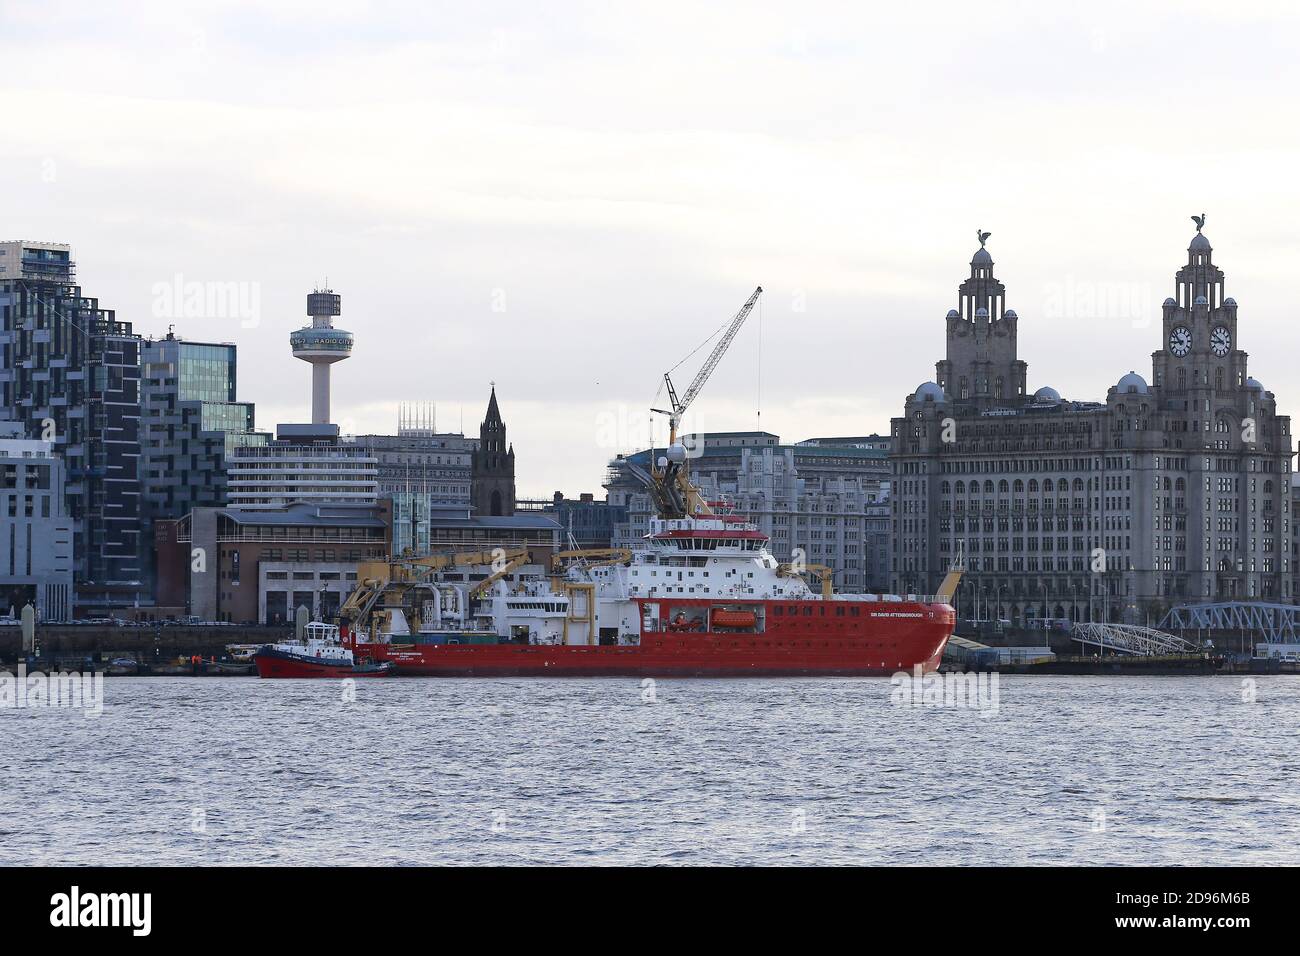 Allgemeine Ansicht der Cammell Laird Werft gebaut RRS Sir David Attenborough als sie Liverpool verlässt, um ihre Versuche in der Irischen See fortzusetzen. Stockfoto